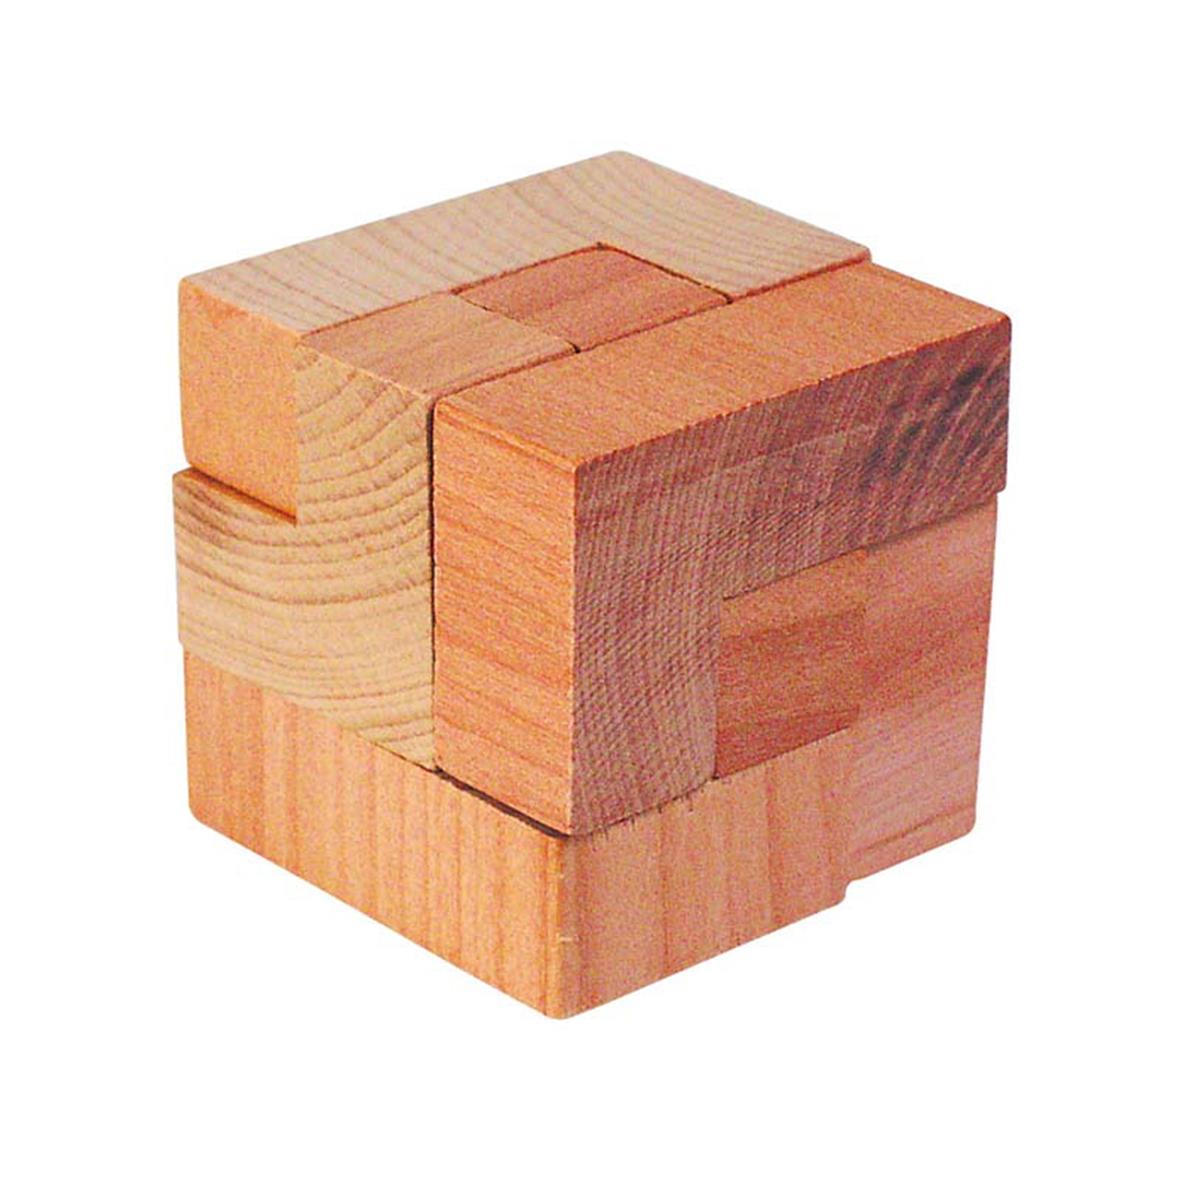 Деревянный кубик опускают в воду. Kairstos-Cube деревянная головоломка. Головоломка Пелси куб металлический. Головоломка Вуден пазл кубик. Головоломка кубик для начинающих.